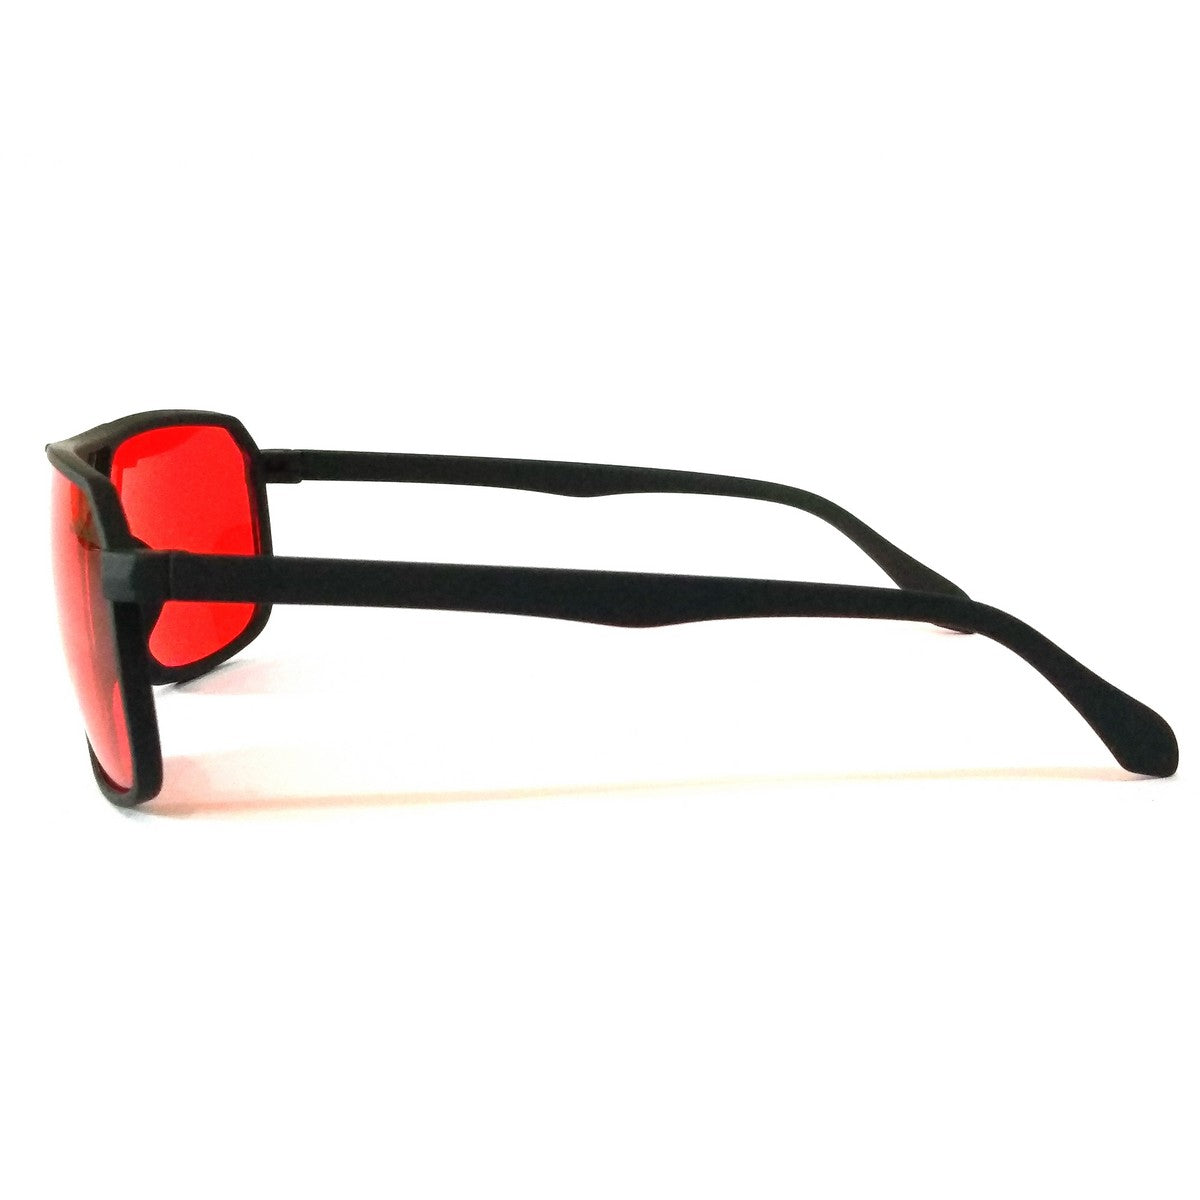 Red Lens Rectangle Sunglasses for Men Women 545